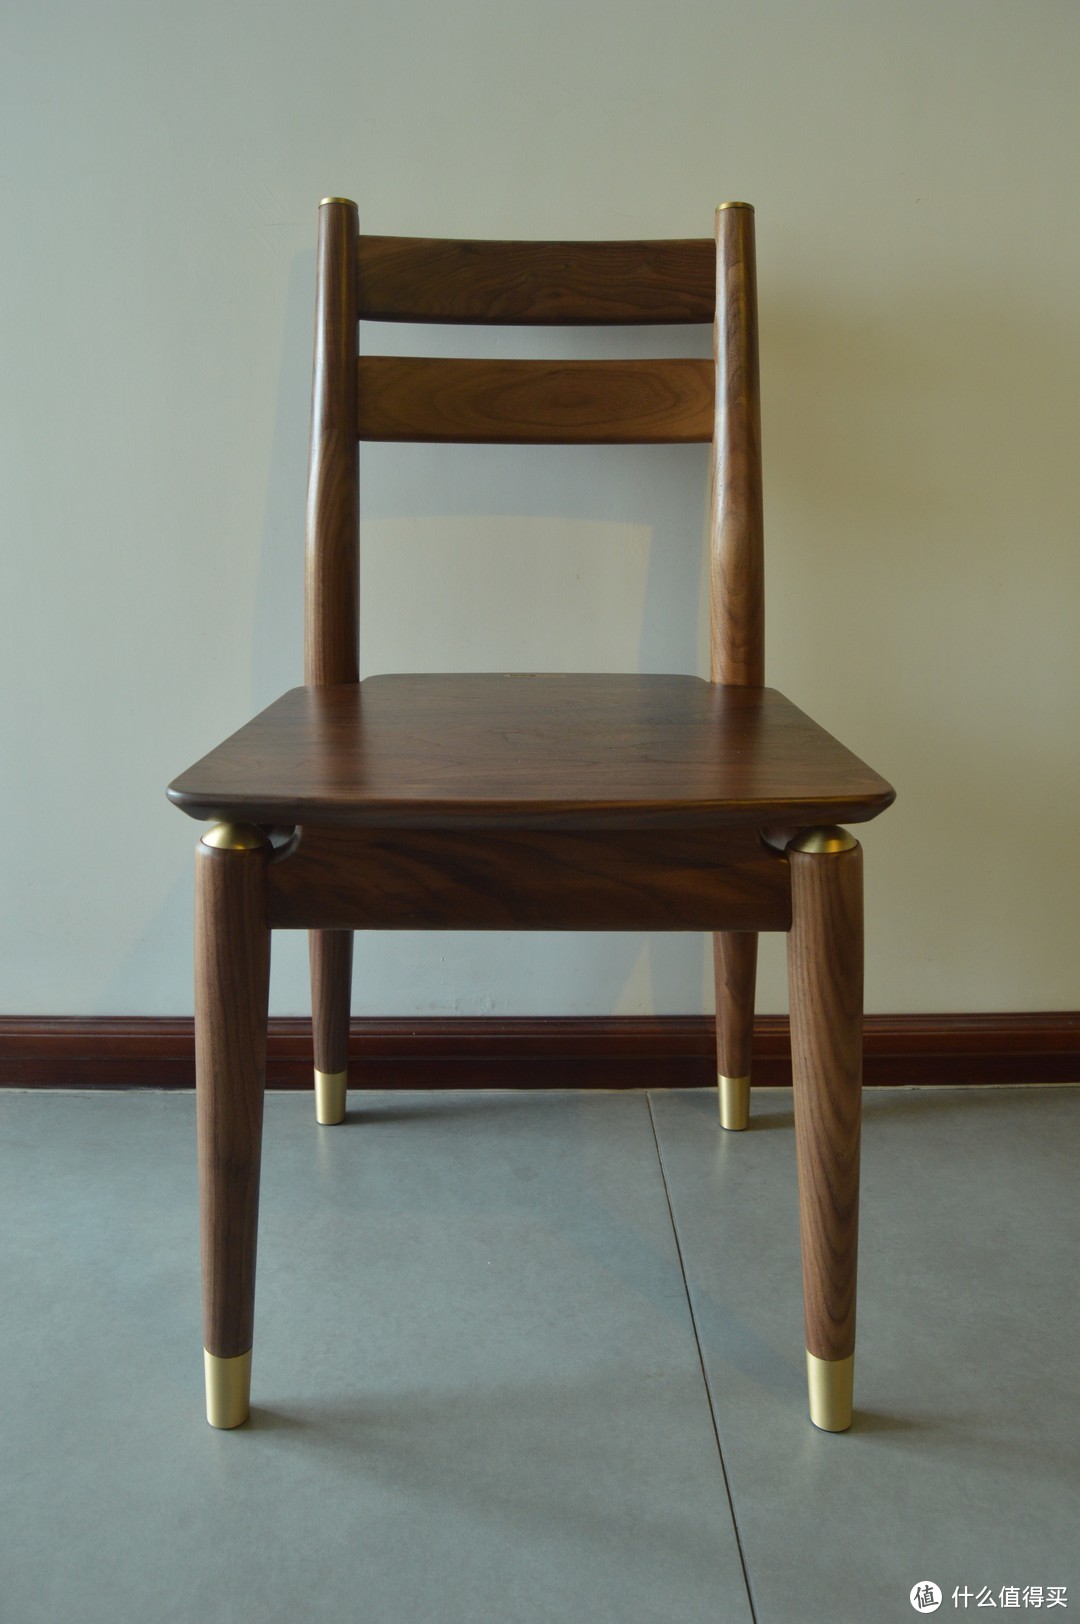 加一千也买不到的原创设计——有品网铜师傅安格尔黑胡桃木餐桌椅套装众测报告